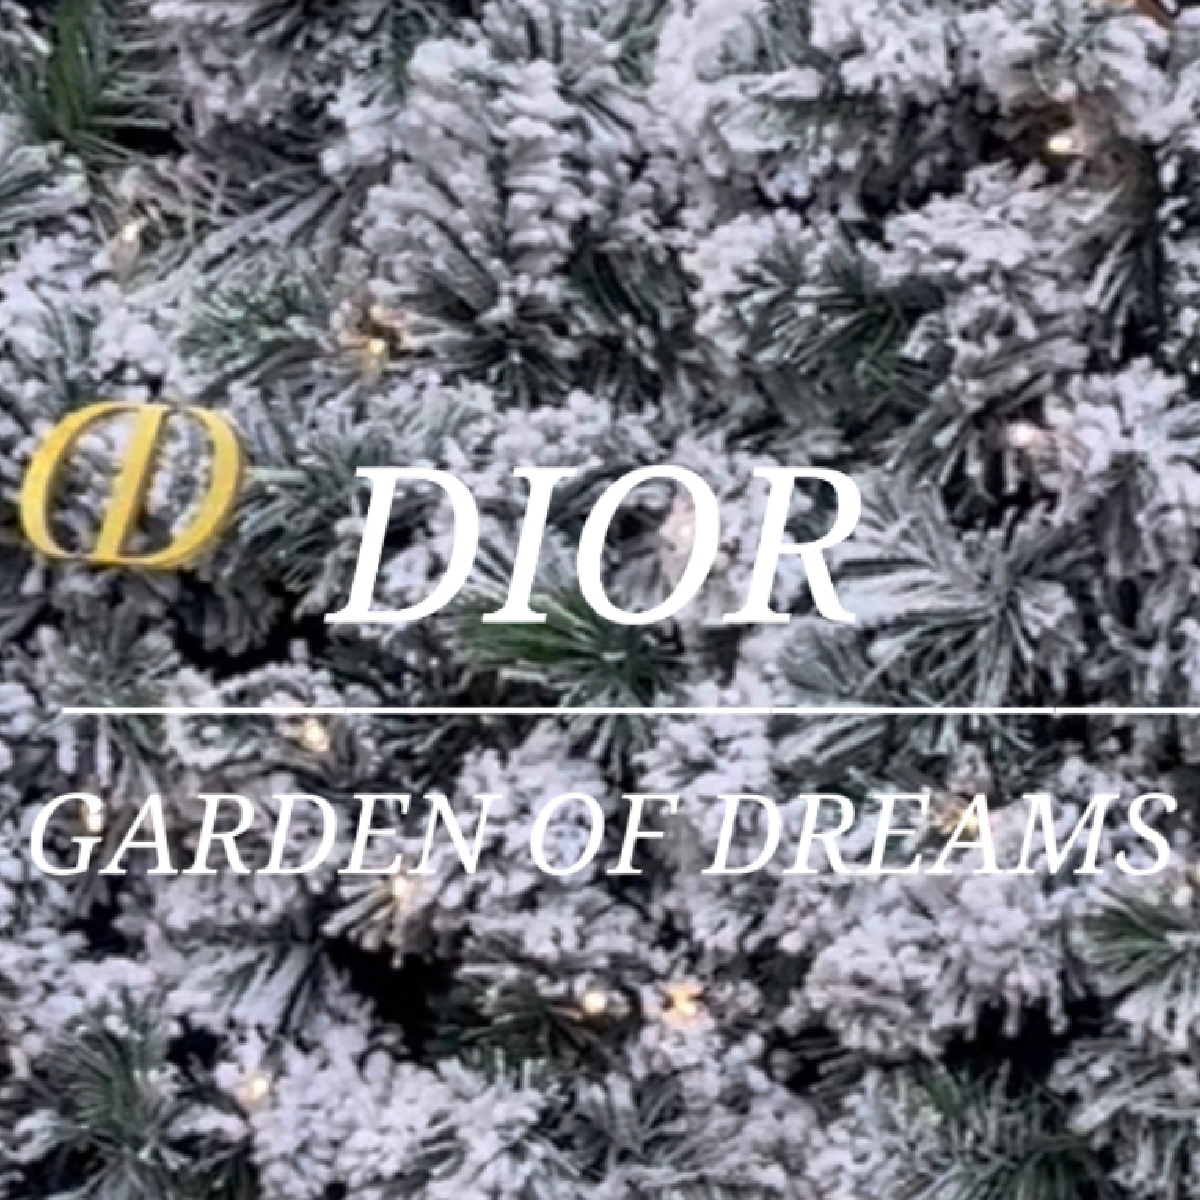 【Diorポップアップイベント|六本木】予約不要・無料で体験！？煌びやかで幻想的な世界観に癒される💐ディオールの『GARDEN OF DREAMS(ガーデン オブ ドリームズ)』に行ってみて♡